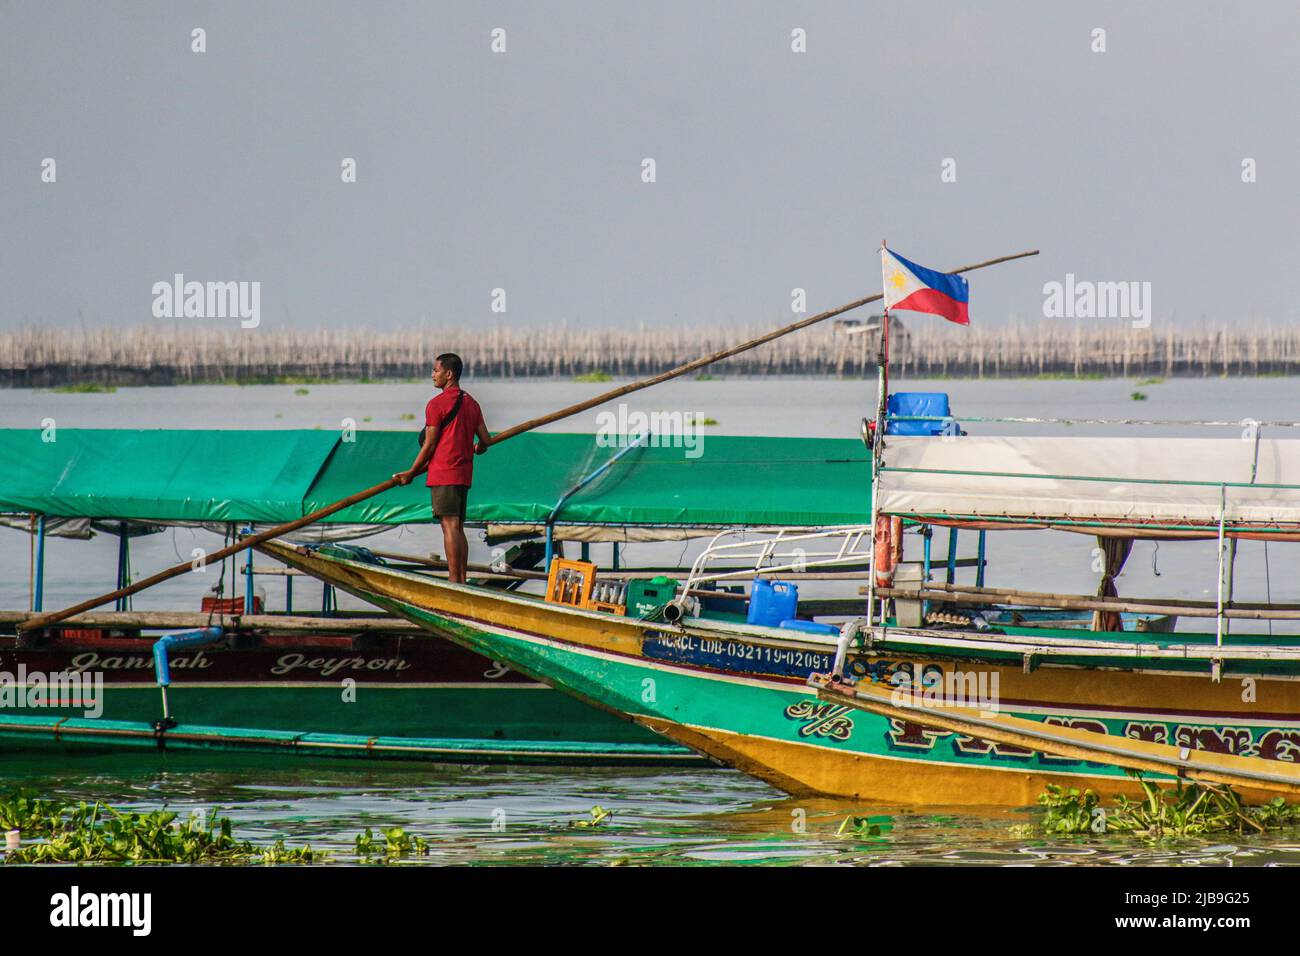 Binangonan, Philippines. 04th juin 2022. Un pêcheur ancre son bateau dans le lac. Le lac Laguna est le plus grand lac des Philippines, d'une superficie de 900 kilomètres carrés ou équivalente à 90 000 hectares. Son eau s'écoule de la province de Laguna jusqu'à la province de Rizal, la partie sud de Luzon. Le lac fournit des ressources comme le transport, les loisirs, les moyens de subsistance et surtout de la nourriture pour les communautés environnantes. Le lac Laguna est classé comme eau douce de classe C, qui a la capacité de cultiver des poissons et d'autres ressources aquatiques. Un bassin versant près des clas de la région métropolitaine de Manille Banque D'Images